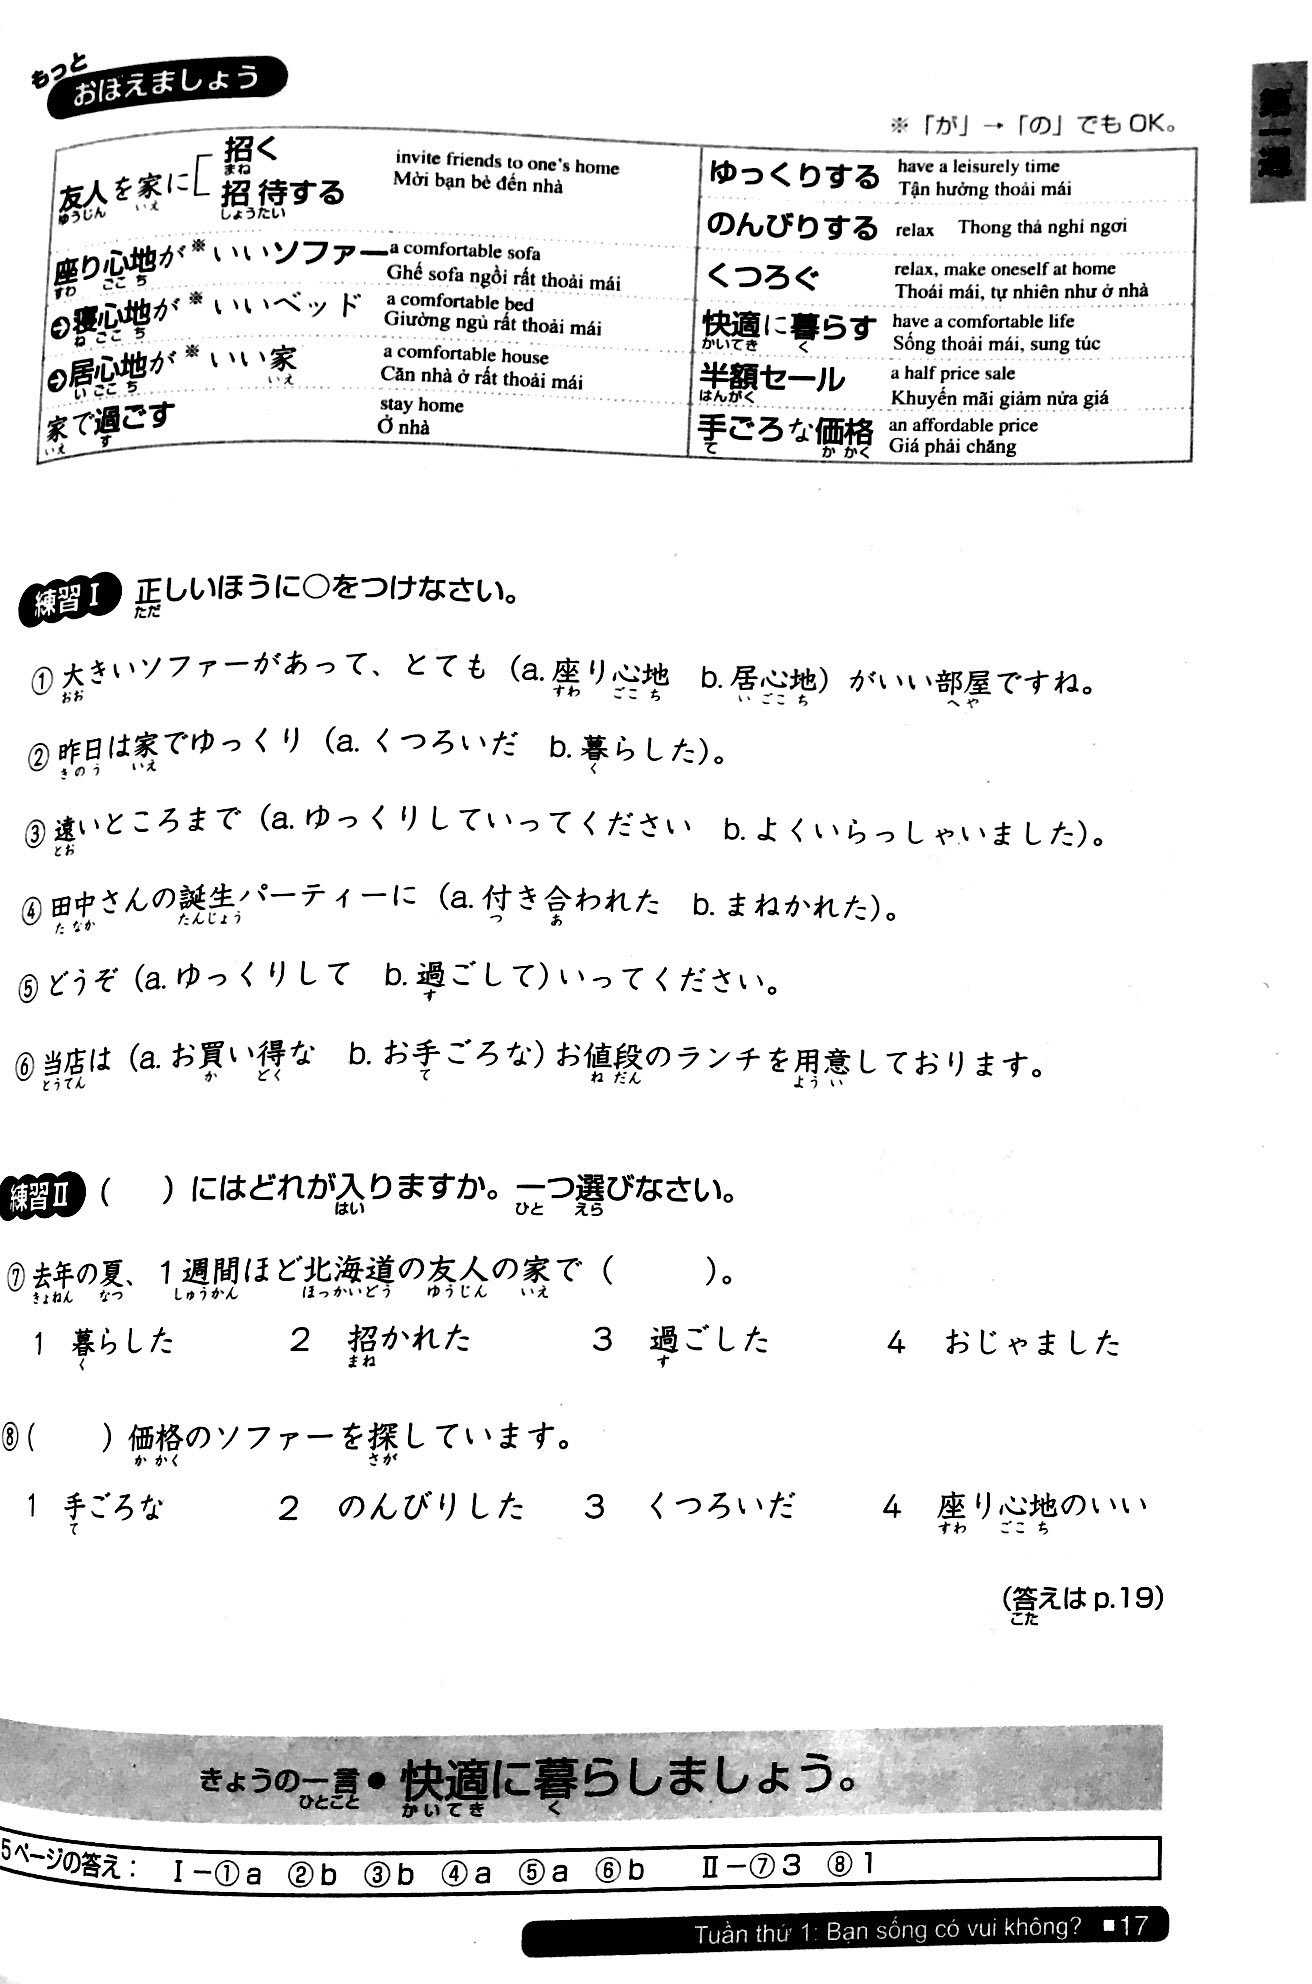 Luyện Thi Năng Lực Nhật Ngữ Trình Độ N2 - Từ Vựng PDF